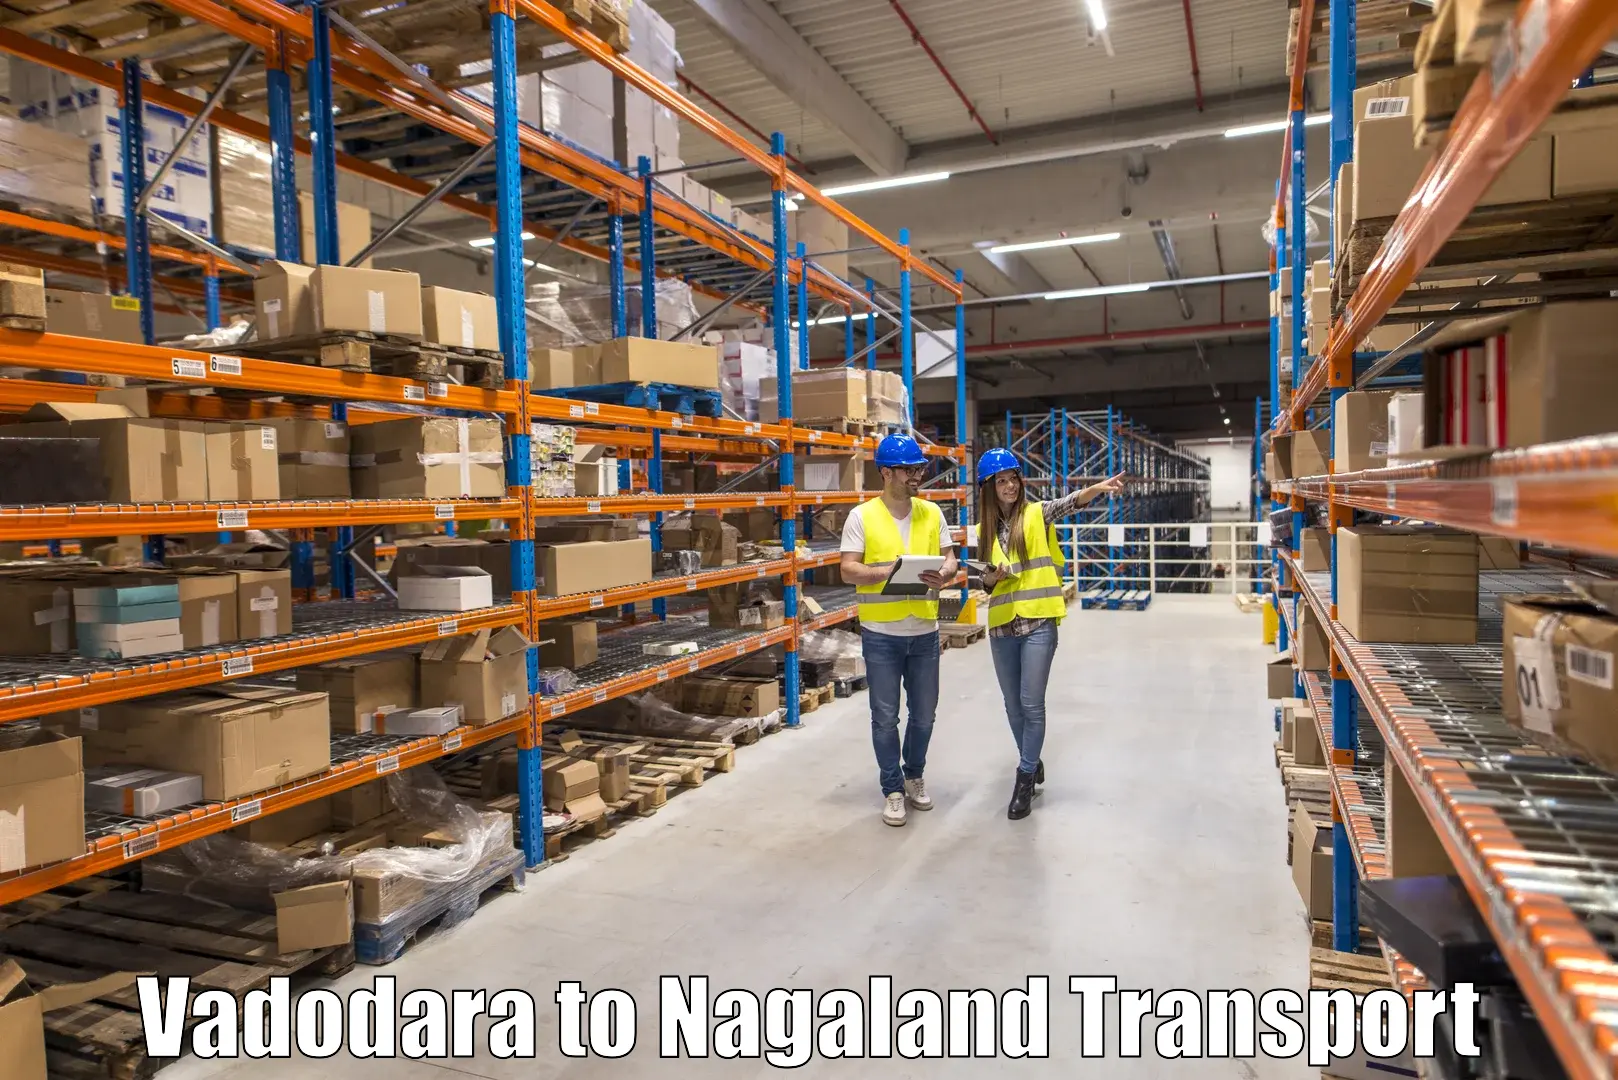 Shipping partner Vadodara to Nagaland